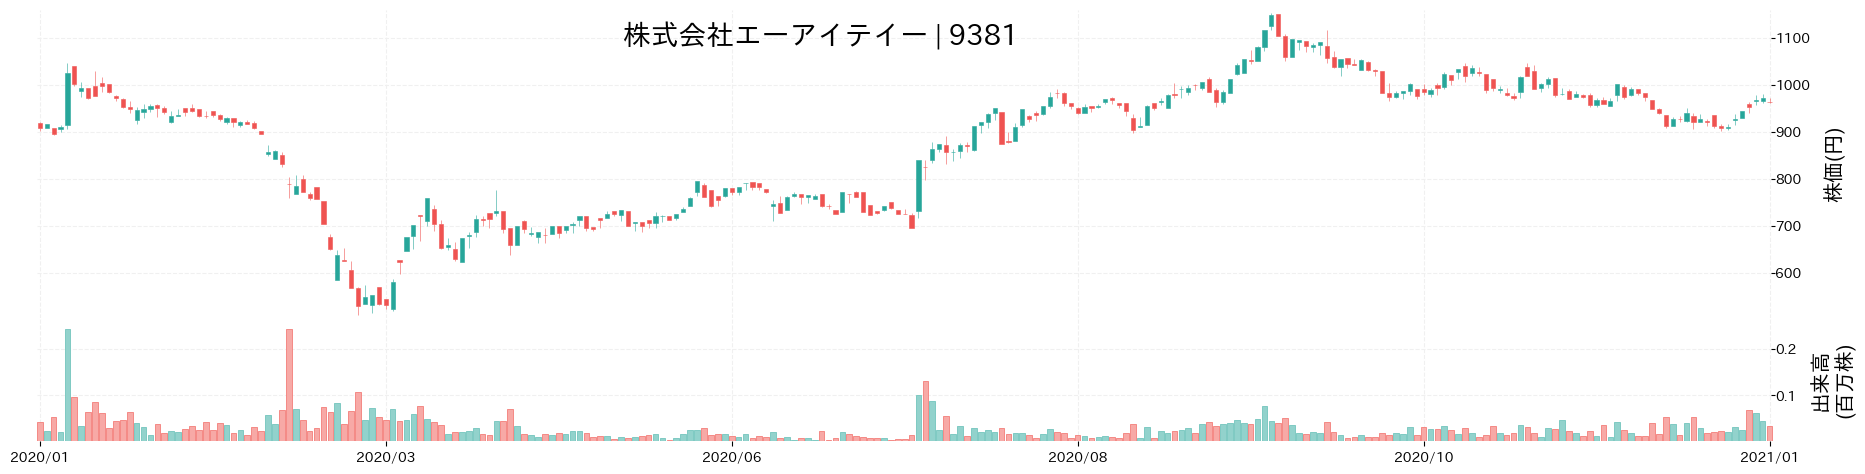 エーアイテイーの株価推移(2020)